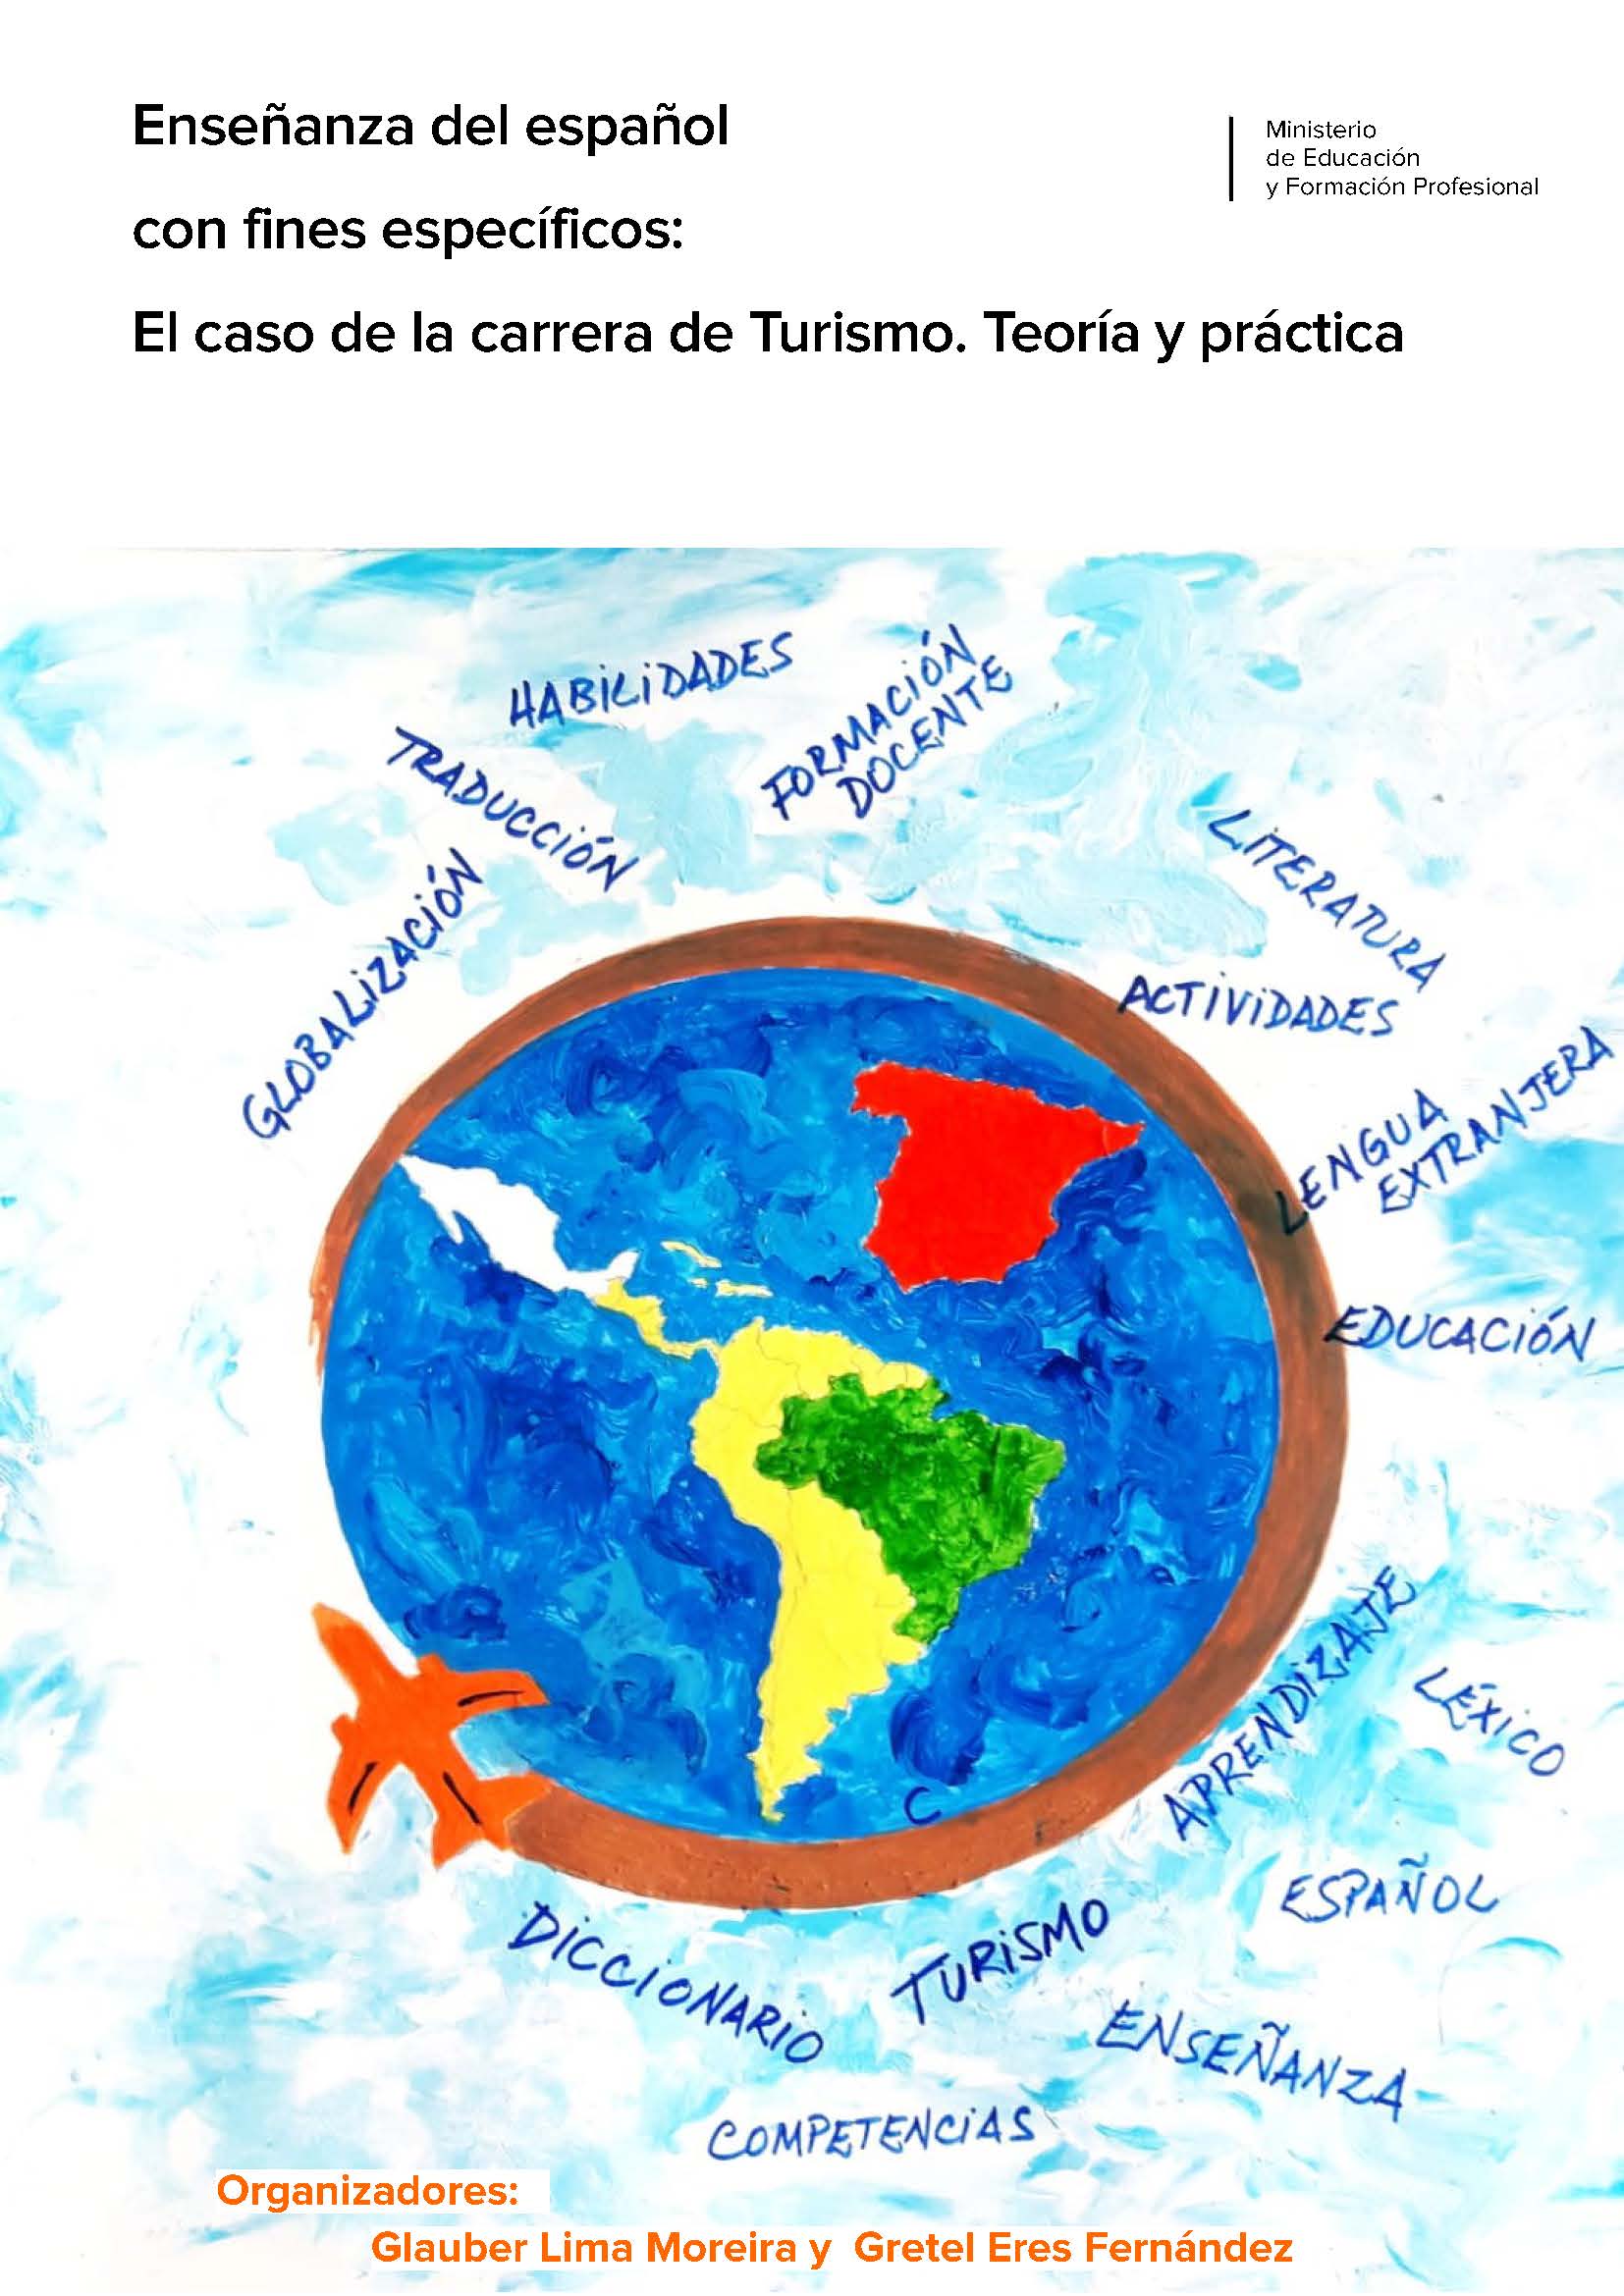 Imagen de portada del libro Enseñanza del español con fines específicos: El caso de la carrera de Turismo. Teoría y práctica